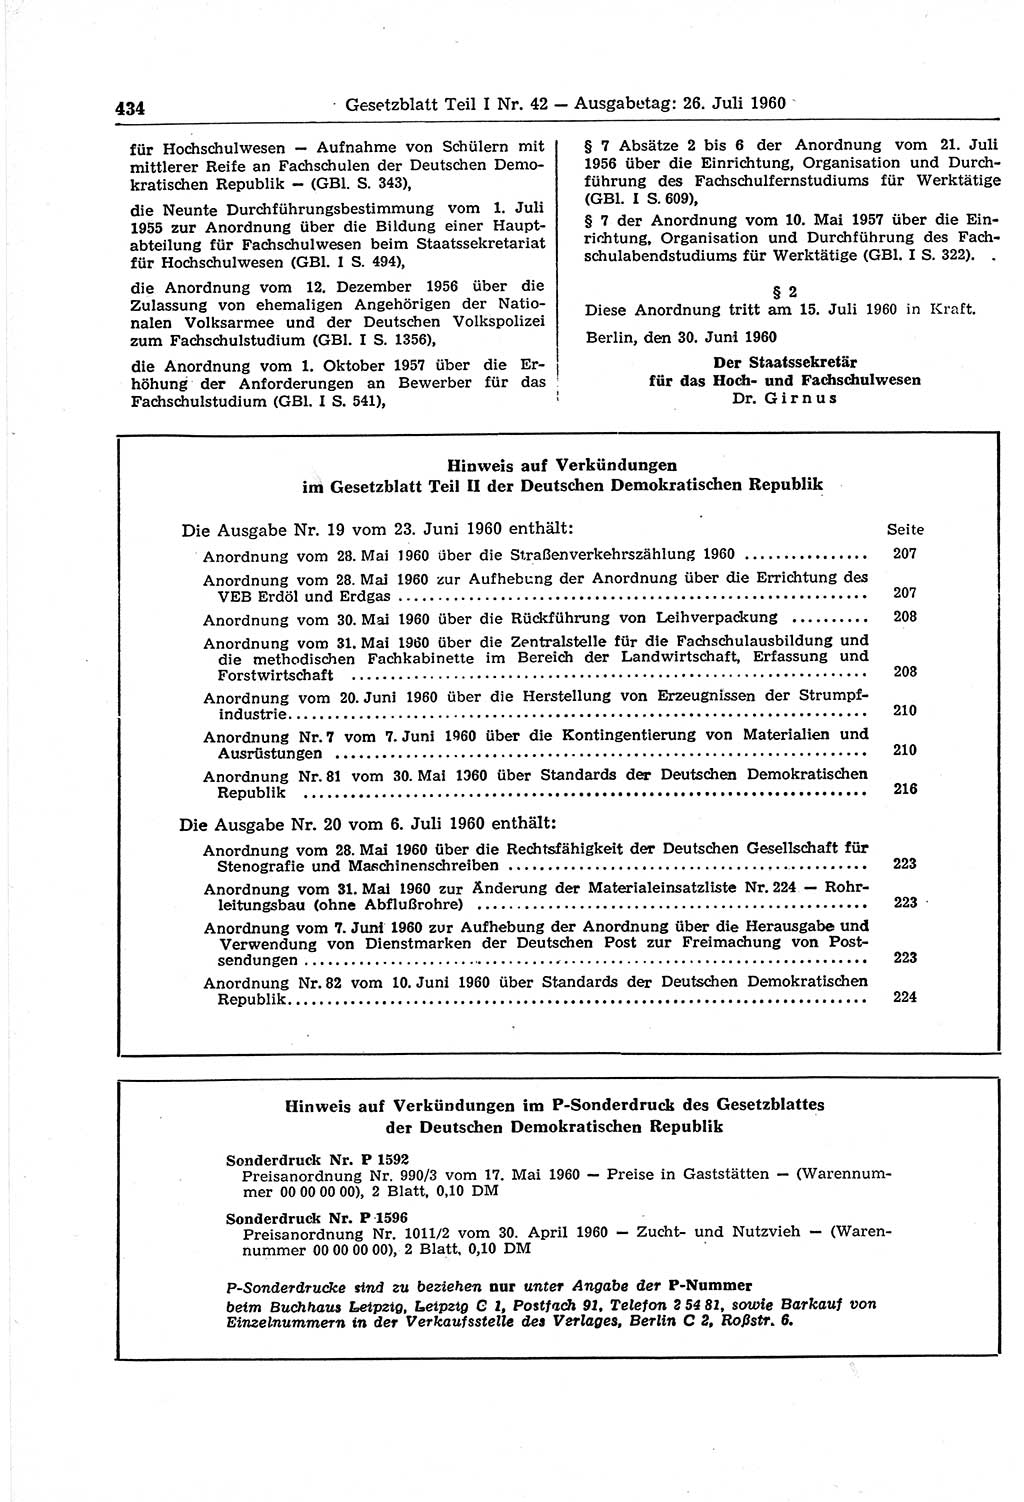 Gesetzblatt (GBl.) der Deutschen Demokratischen Republik (DDR) Teil Ⅰ 1960, Seite 434 (GBl. DDR Ⅰ 1960, S. 434)